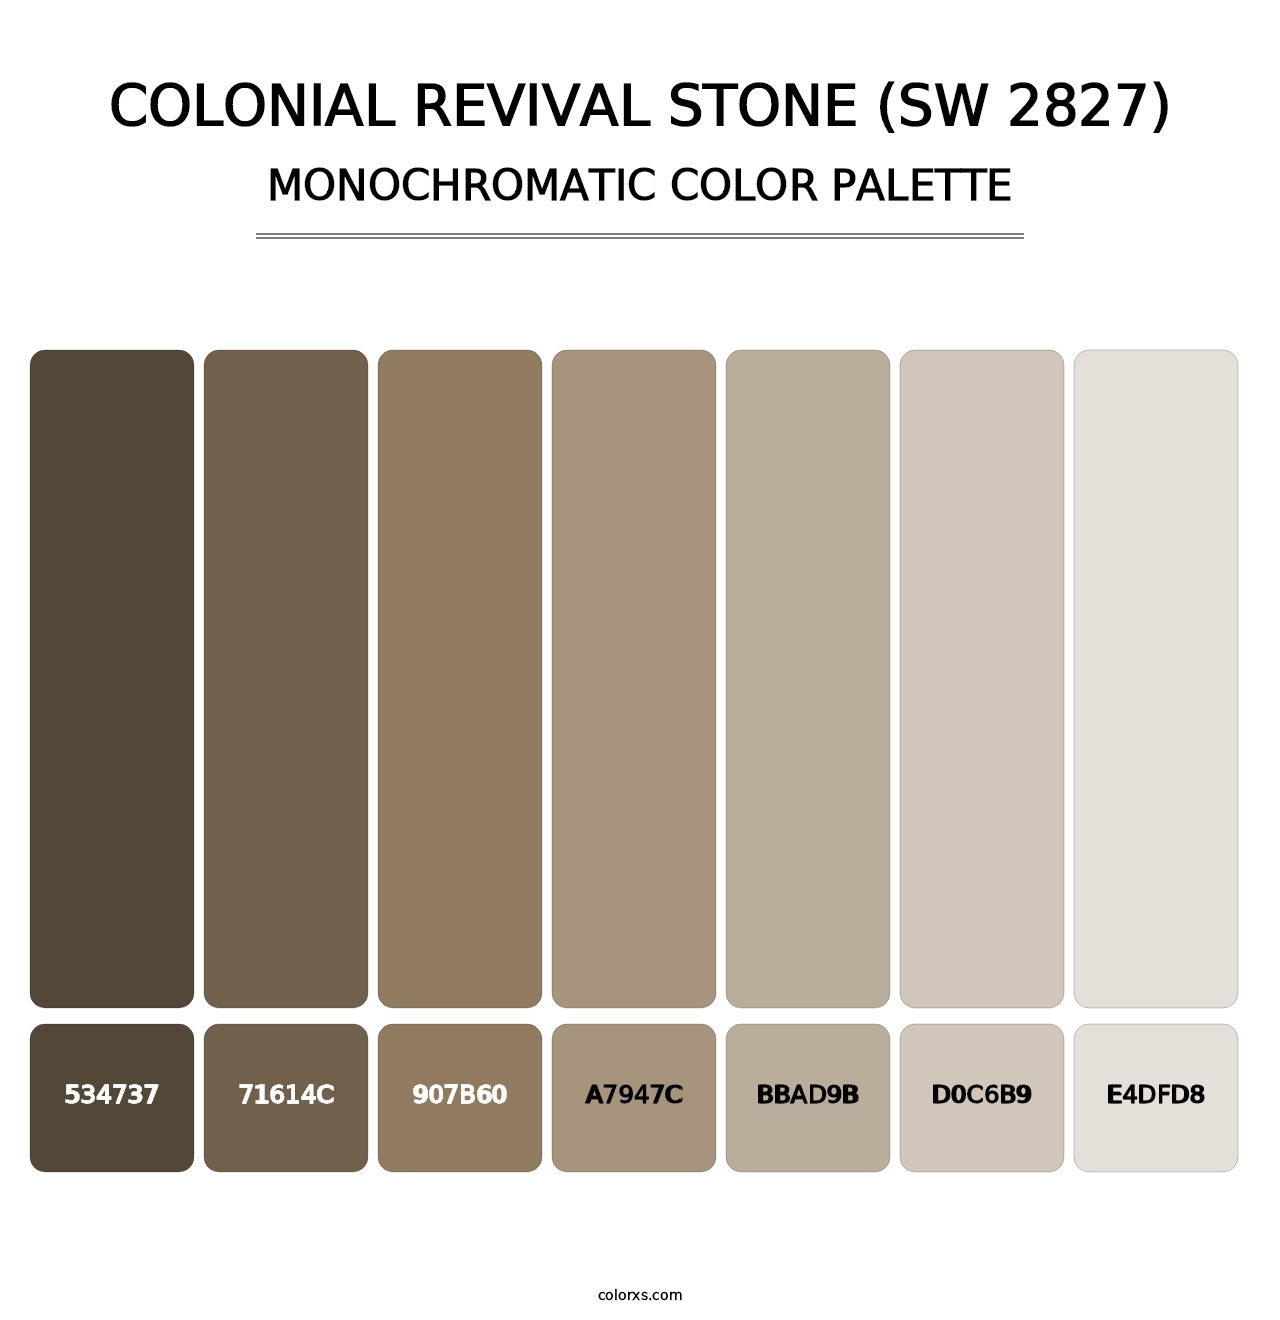 Colonial Revival Stone (SW 2827) - Monochromatic Color Palette